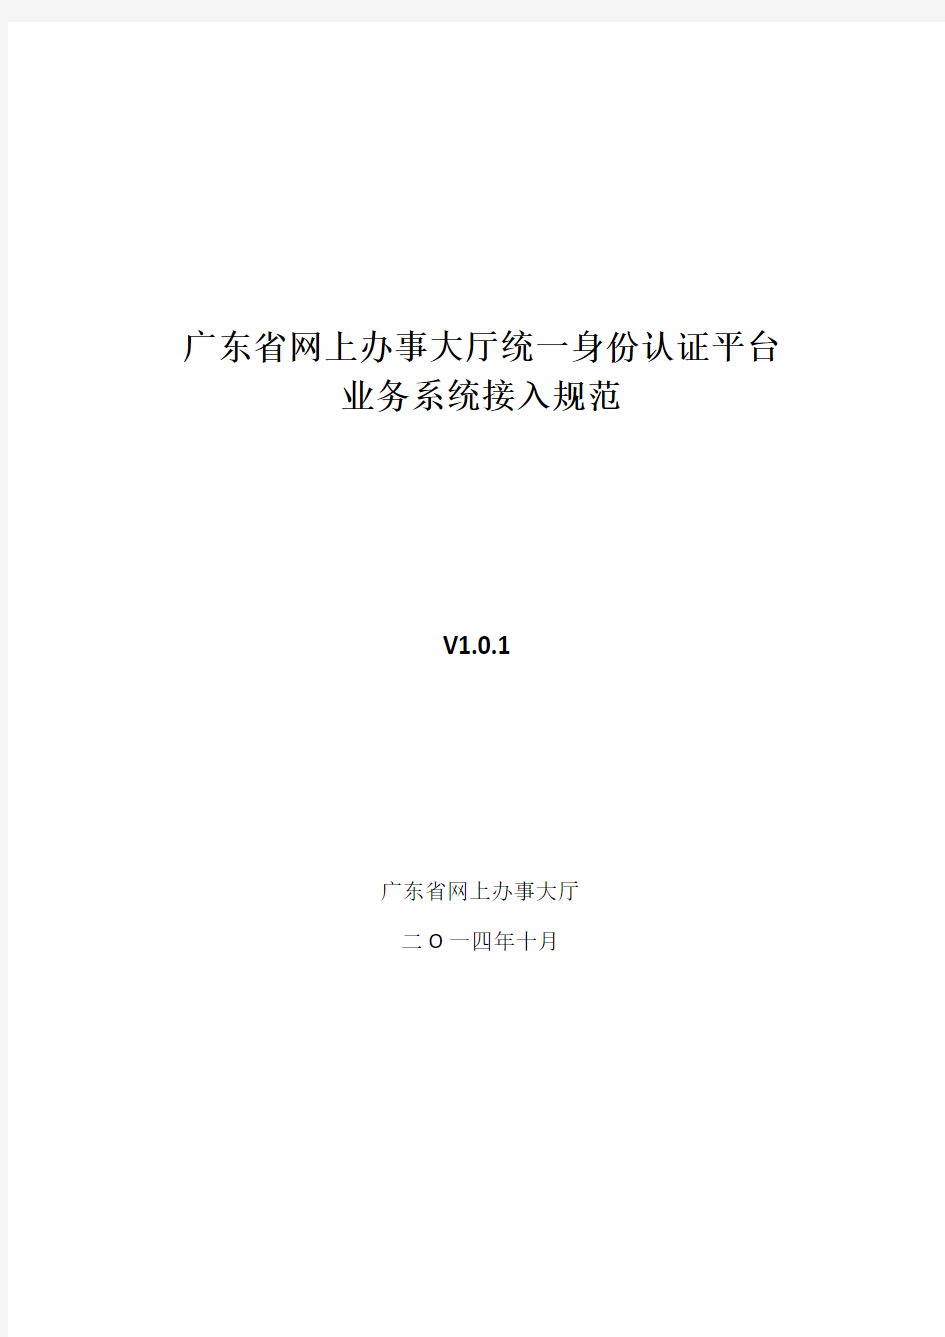 1-广东省网上办事大厅统一身份认证平台对接规范V1.0.1